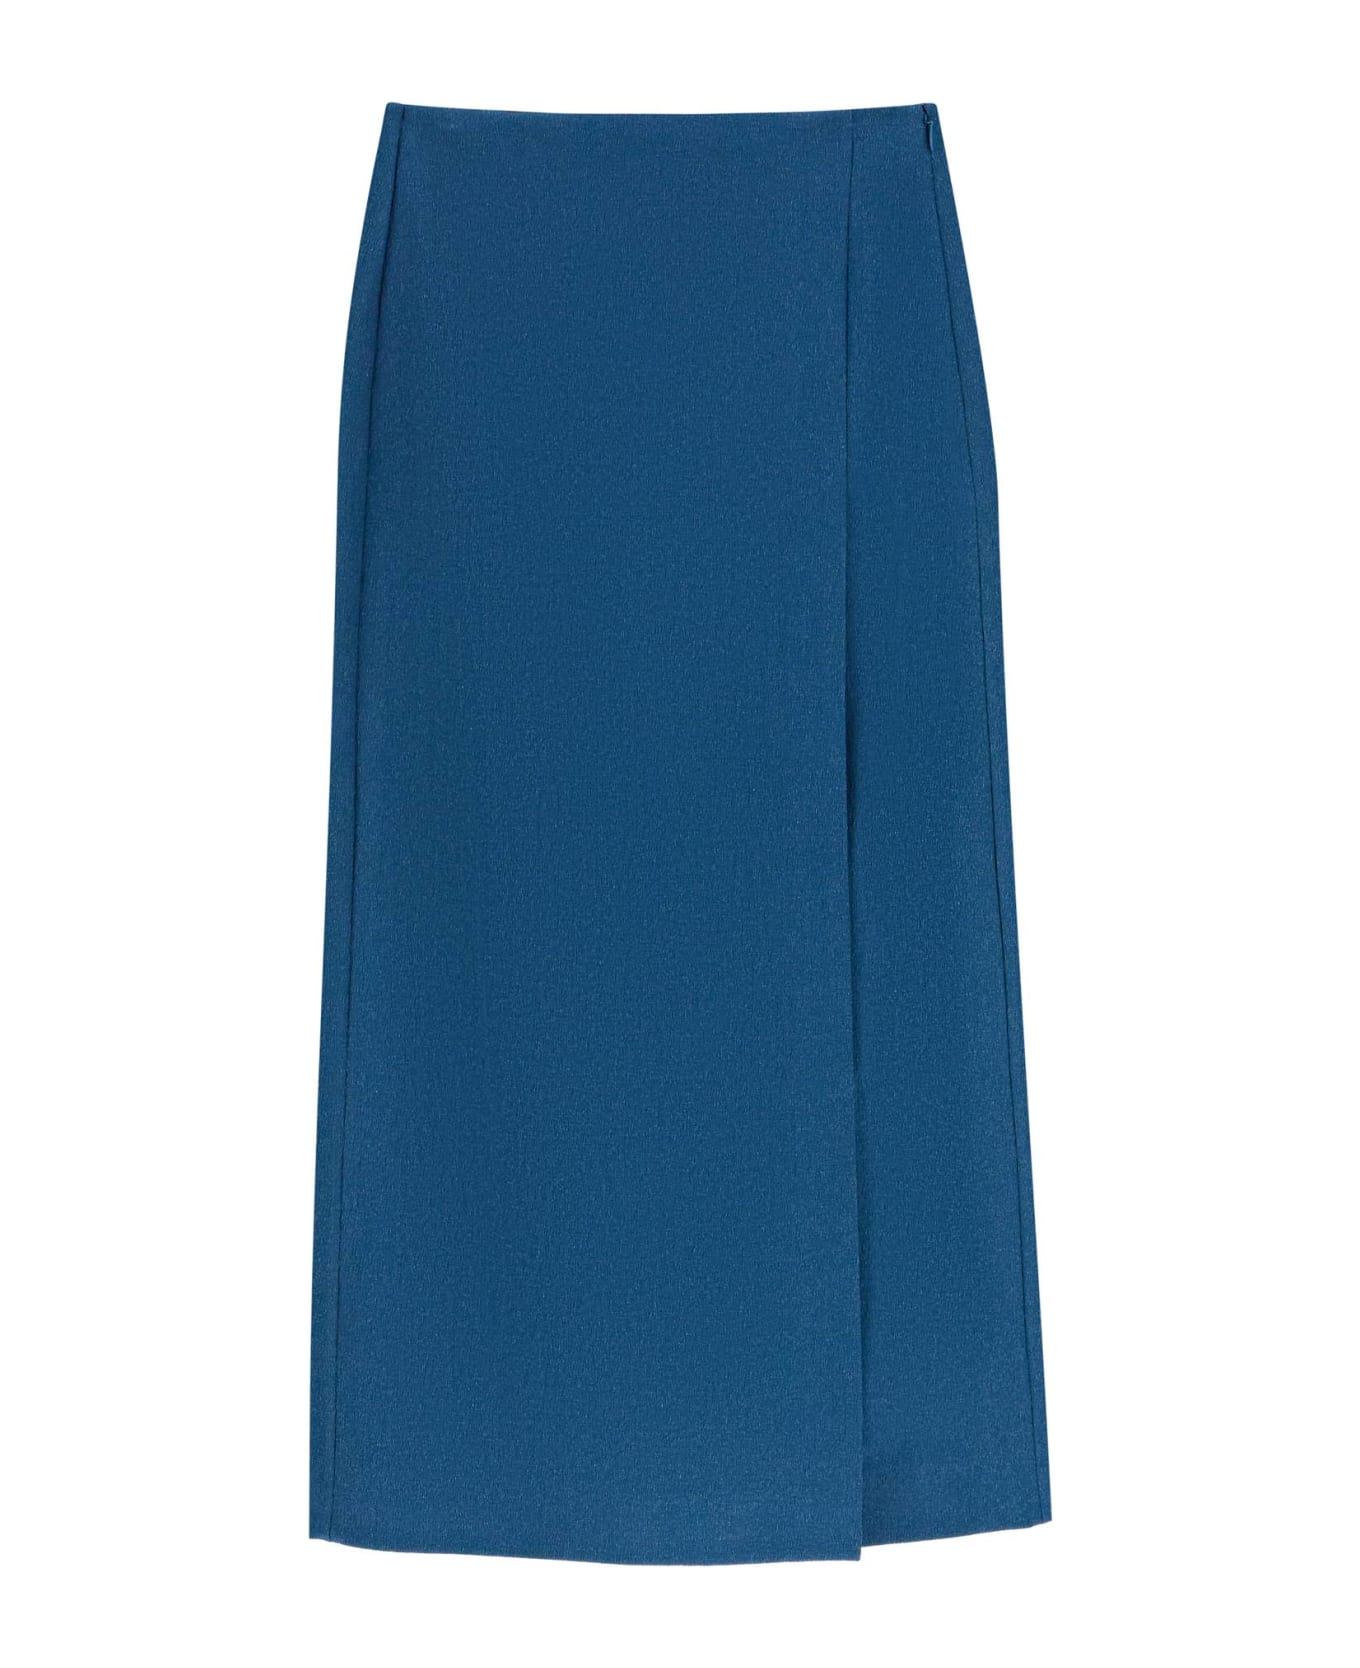 Tory Burch Faille Skirt - Blu